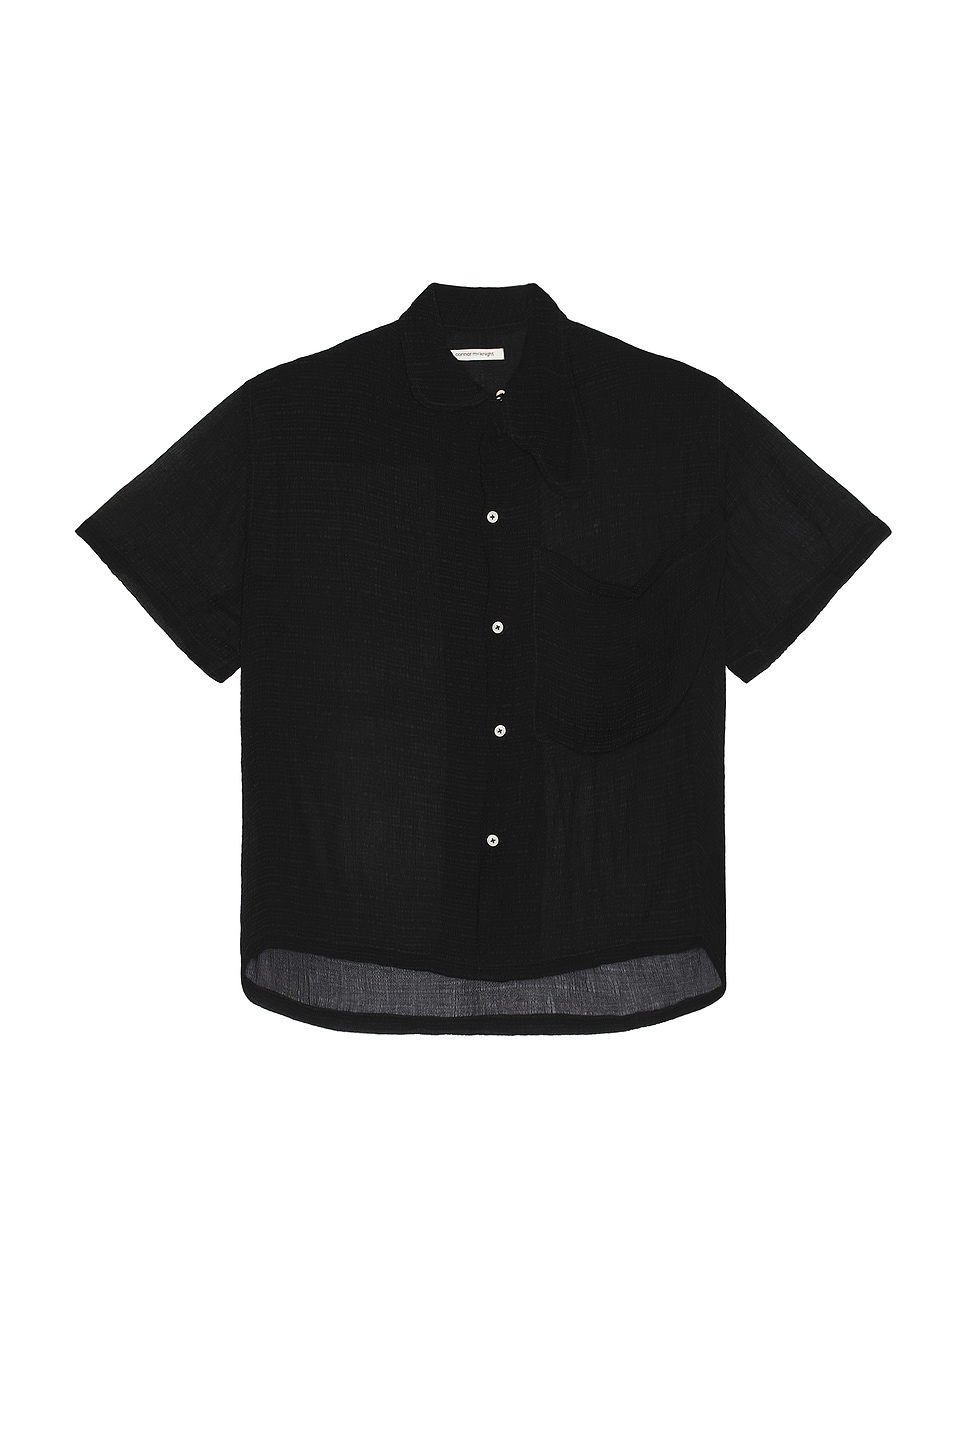 Crinkle Short Sleeve Big Pocket Shirt in Black